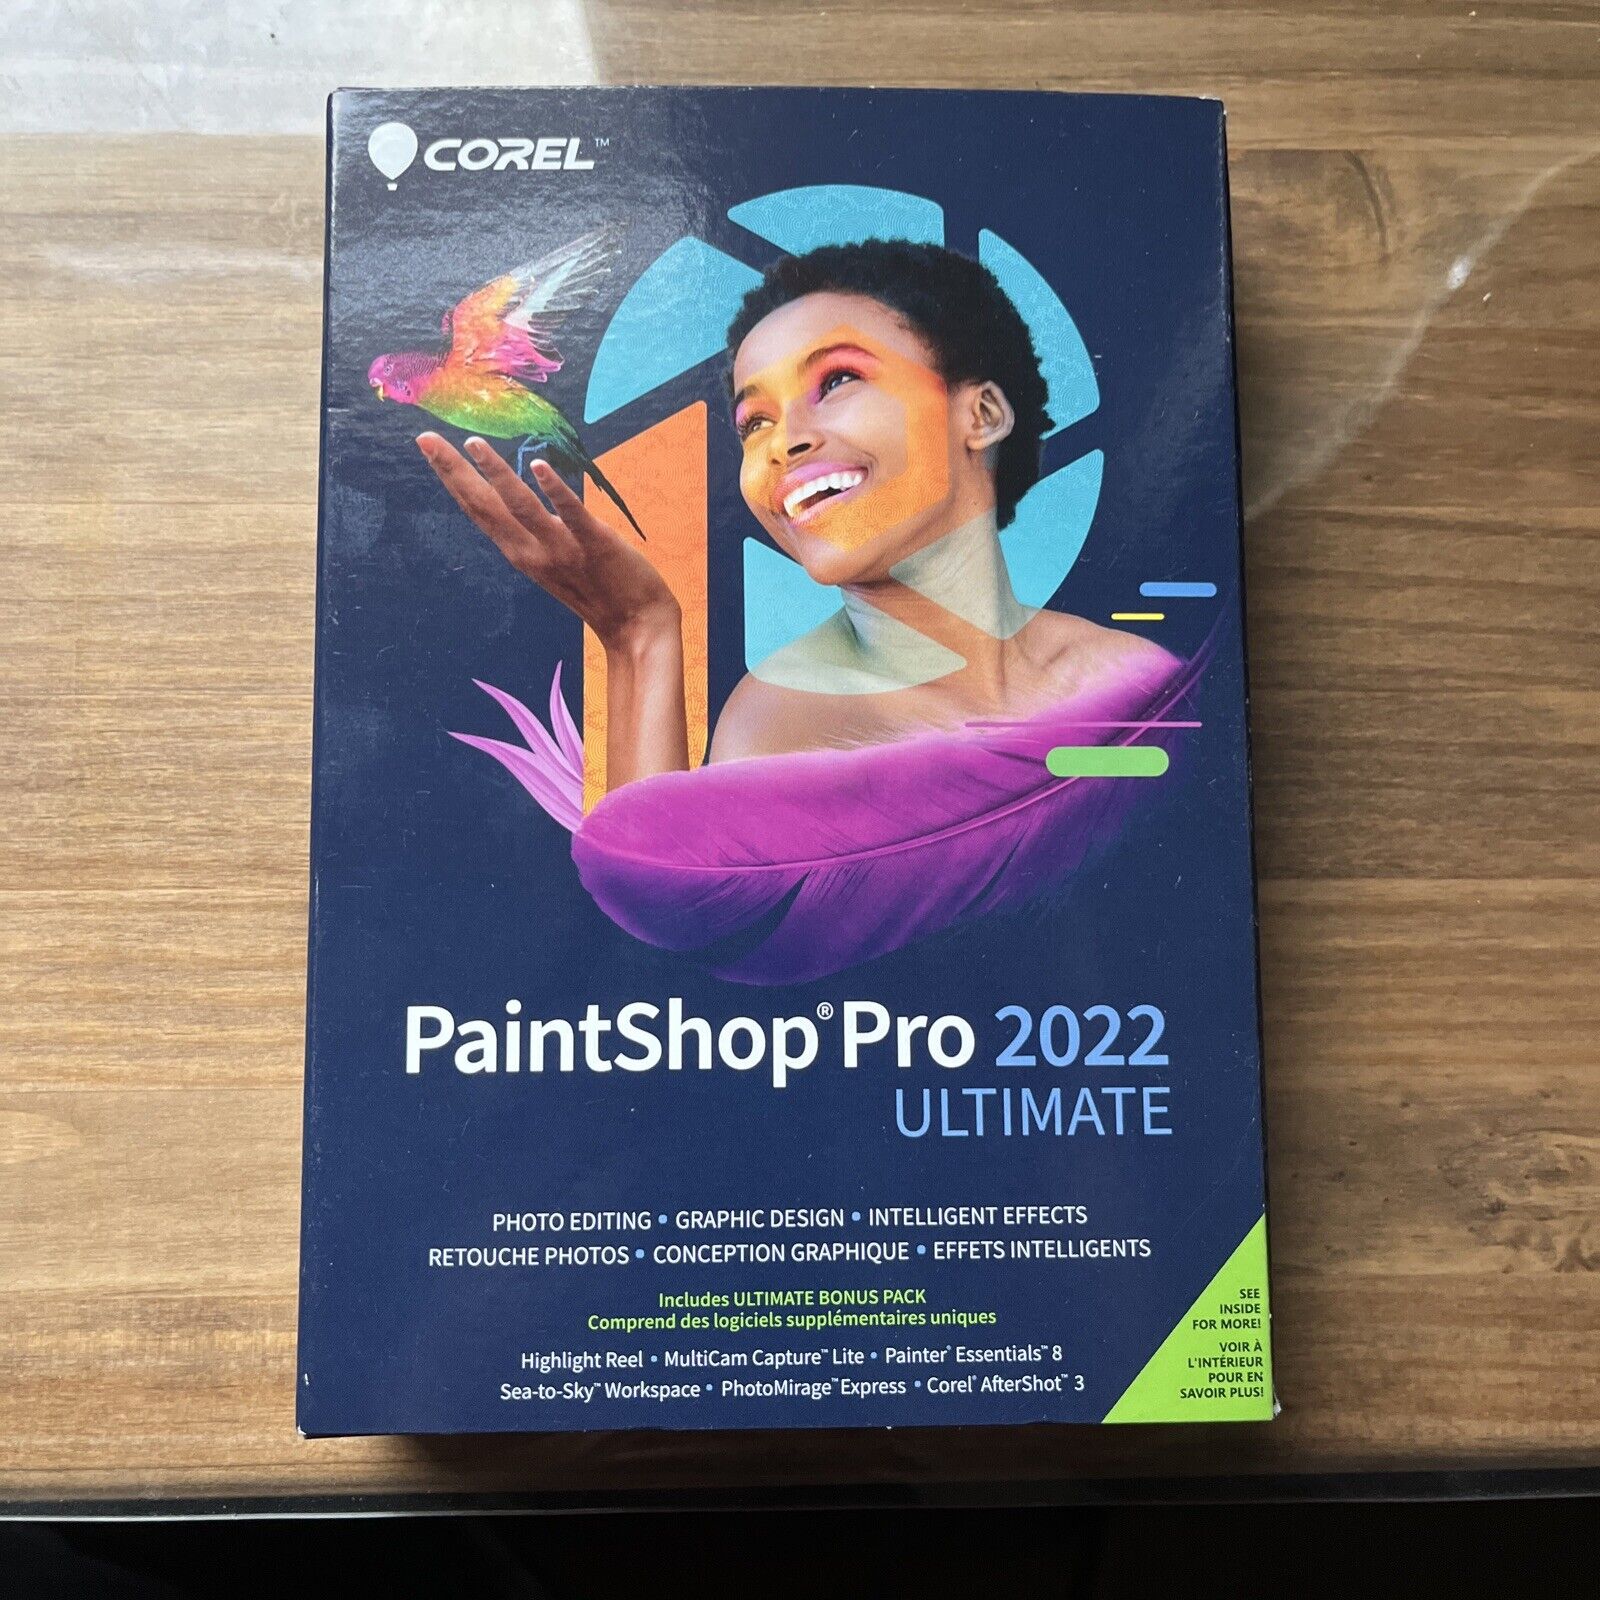 Corel PaintShop Pro 2022 Ultimate for Windows